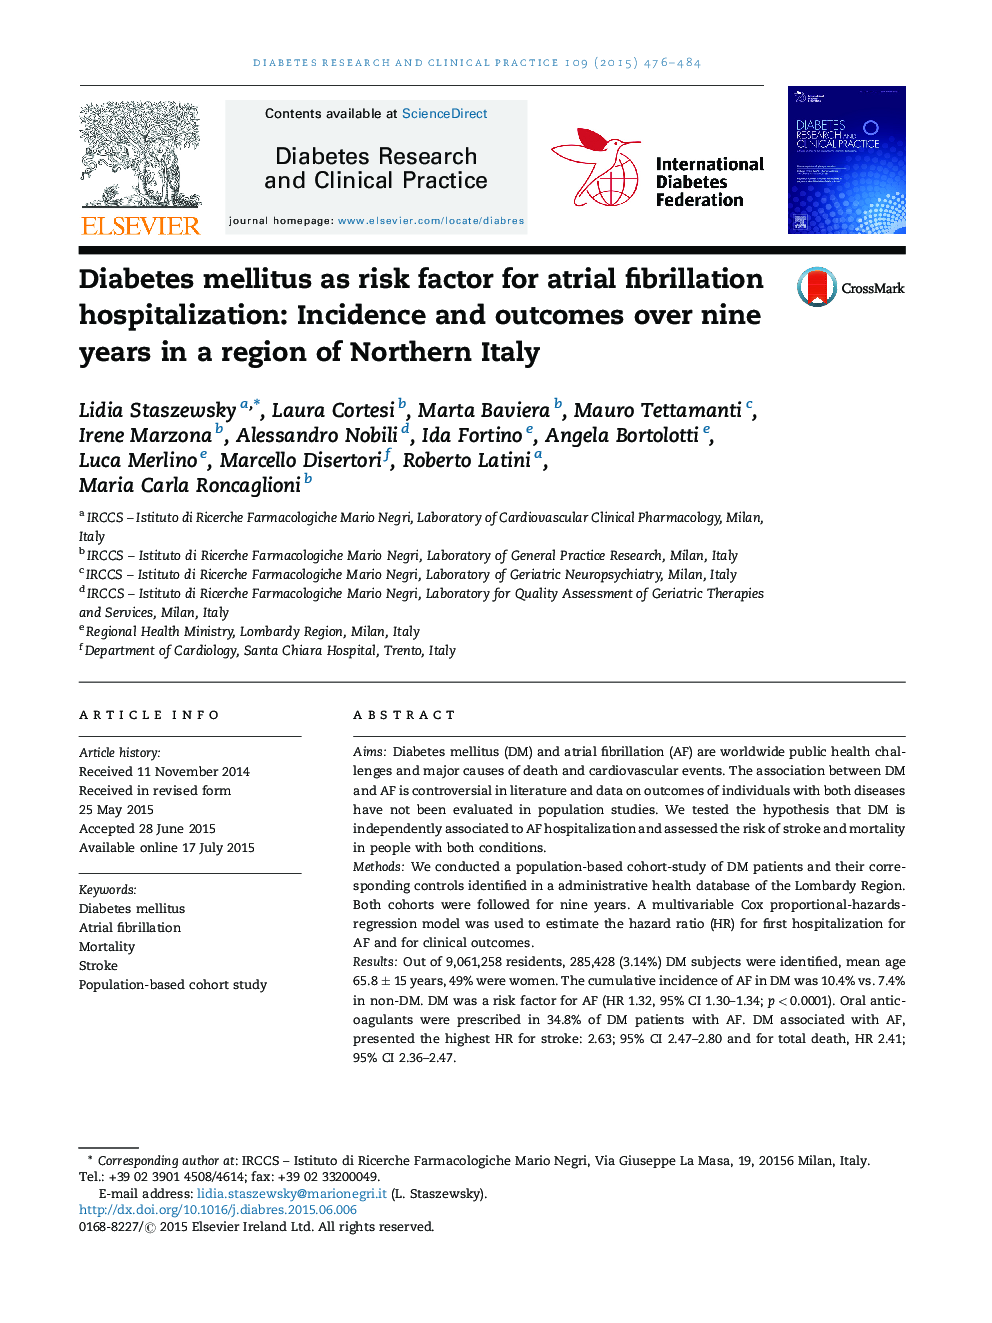 دیابت به عنوان عامل خطر برای بستری شدن در فیبریلاسیون دهلیزی: بروز و نتایج بیش از 9 سال در یک منطقه شمال ایتالیا 